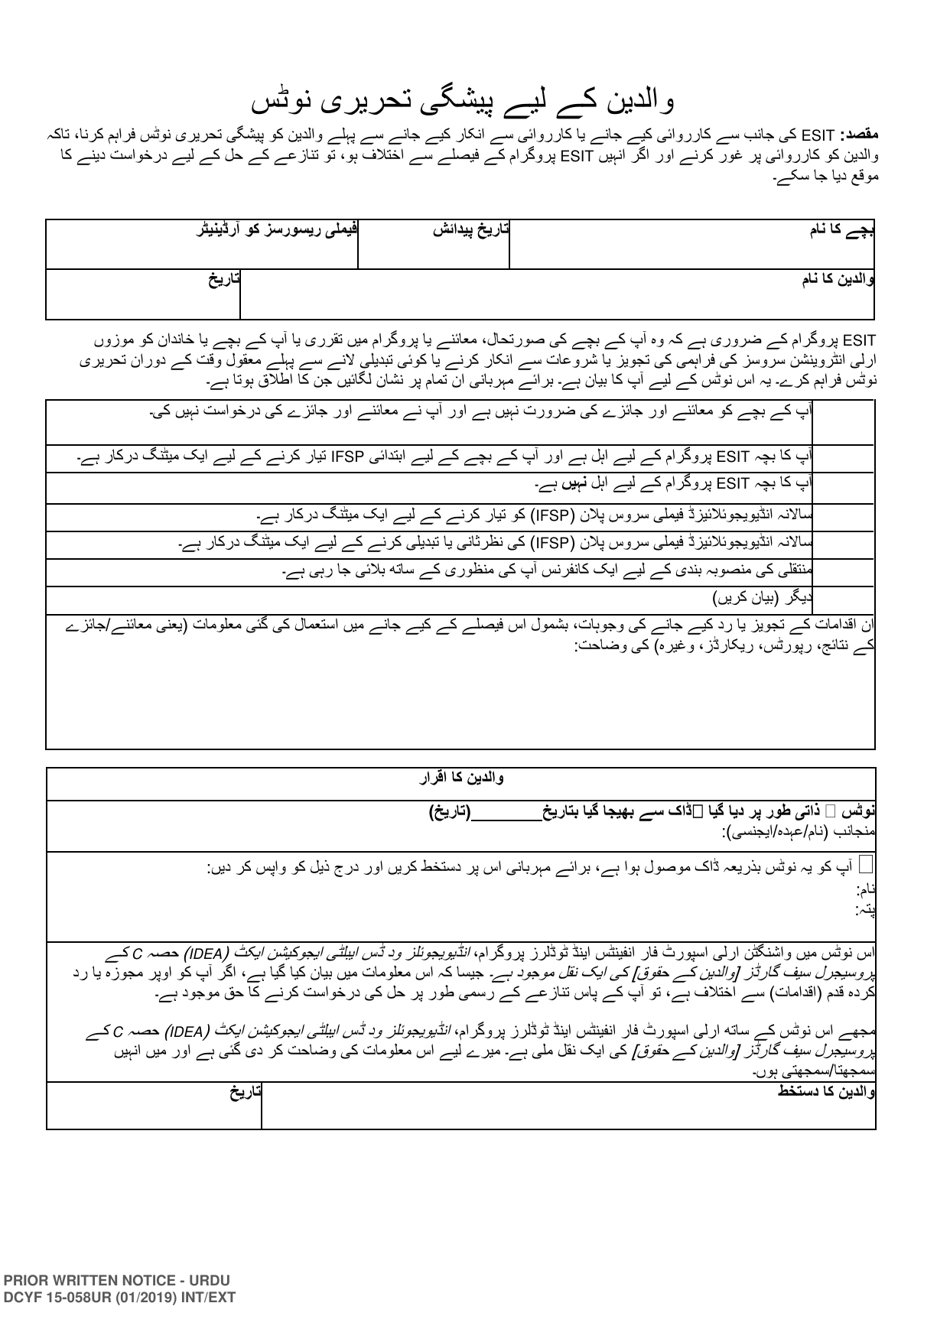 DCYF Form 15-058 Parent Prior Written Notice - Washington (Urdu), Page 1